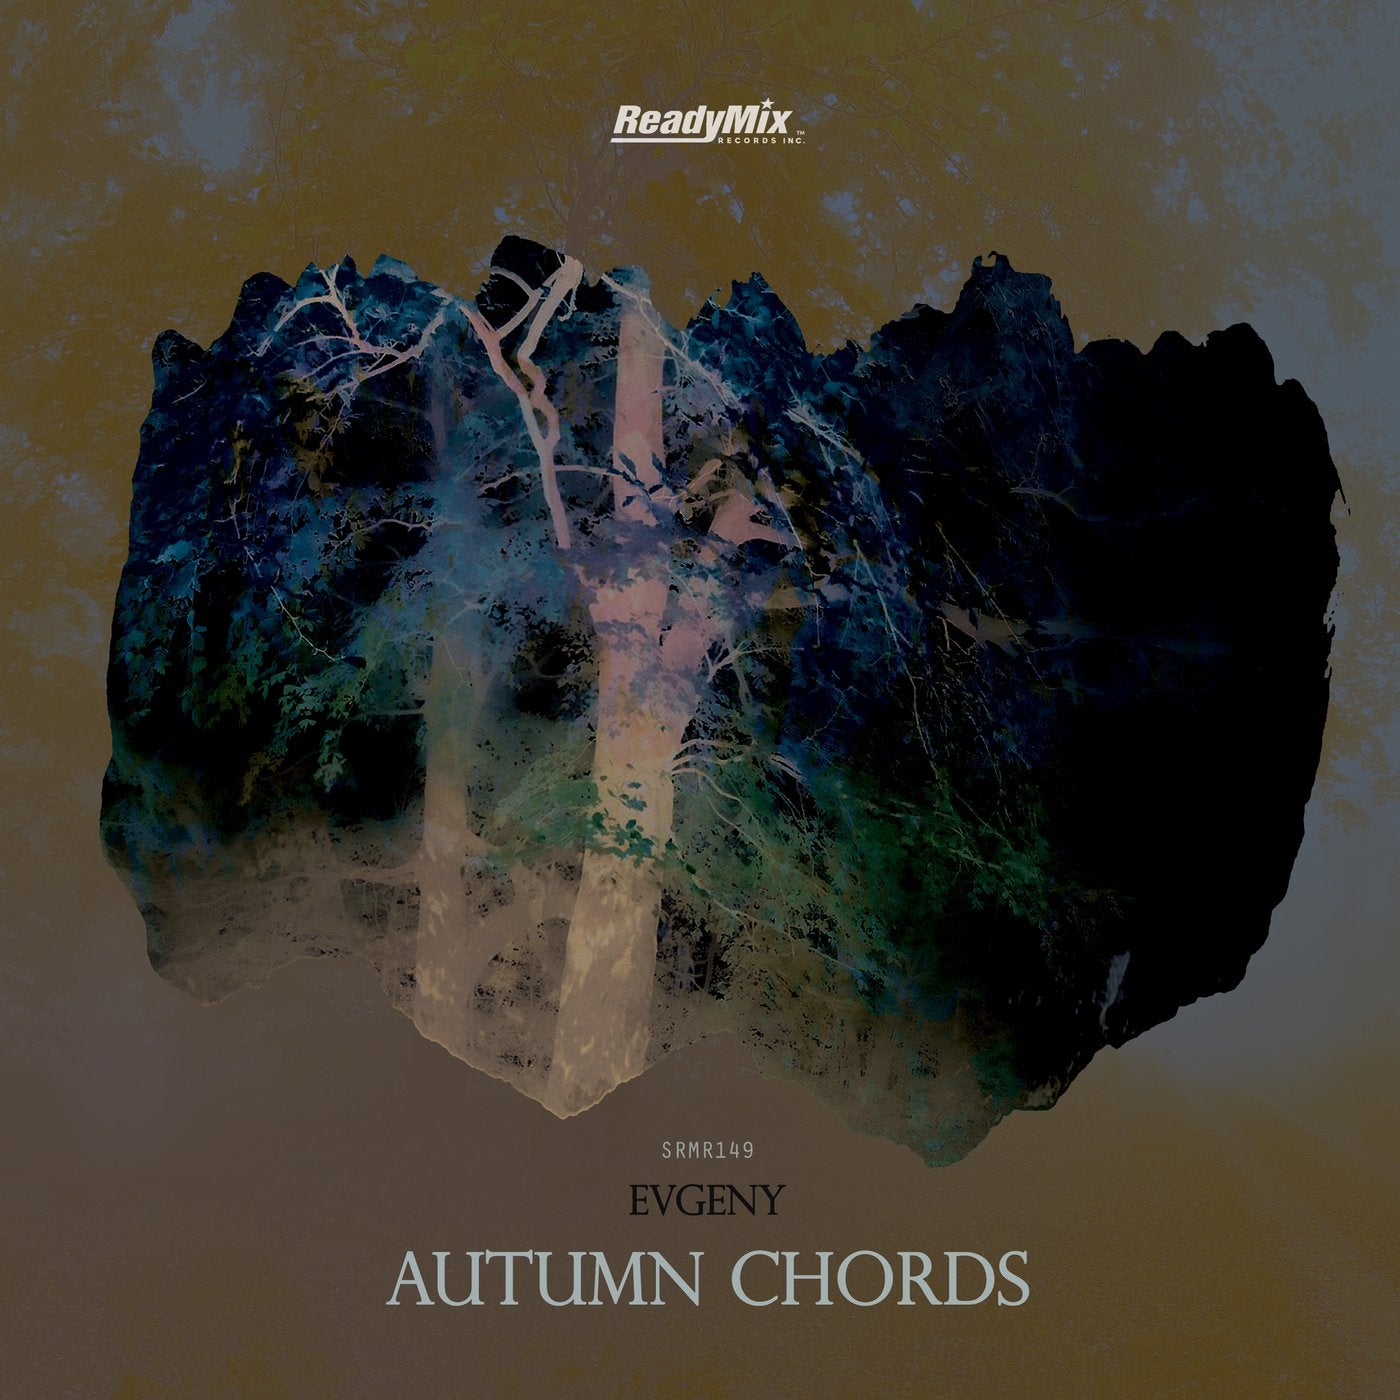 Autumn Chords